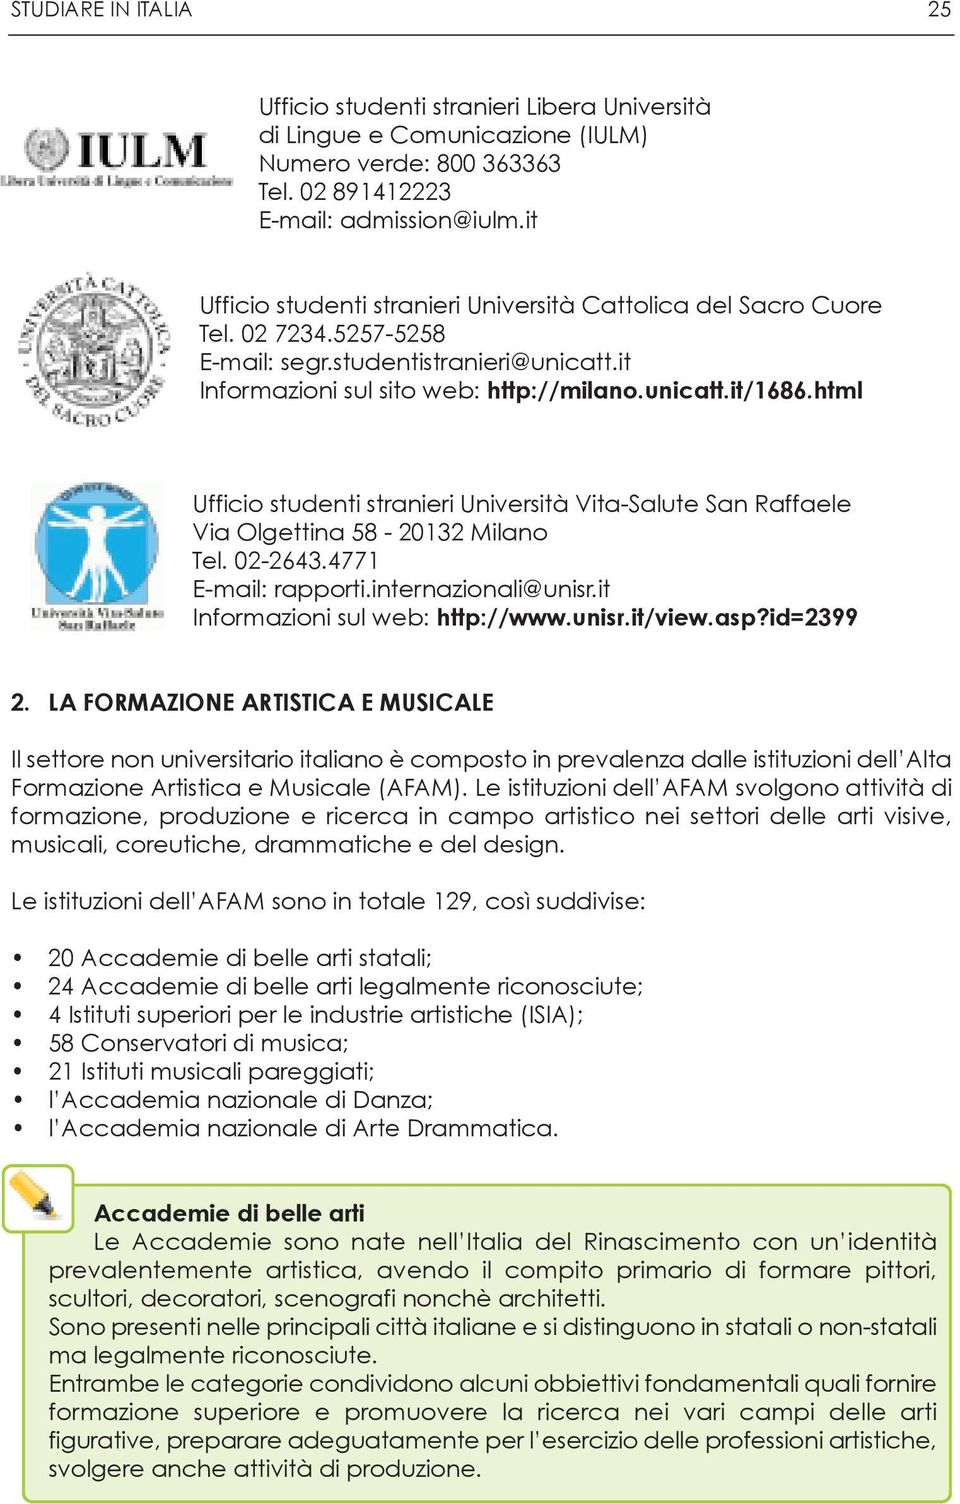 html Ufficio studenti stranieri Università Vita-Salute San Raffaele Via Olgettina 58-20132 Milano Tel. 02-2643.4771 E-mail: rapporti.internazionali@unisr.it Informazioni sul web: http://www.unisr.it/view.